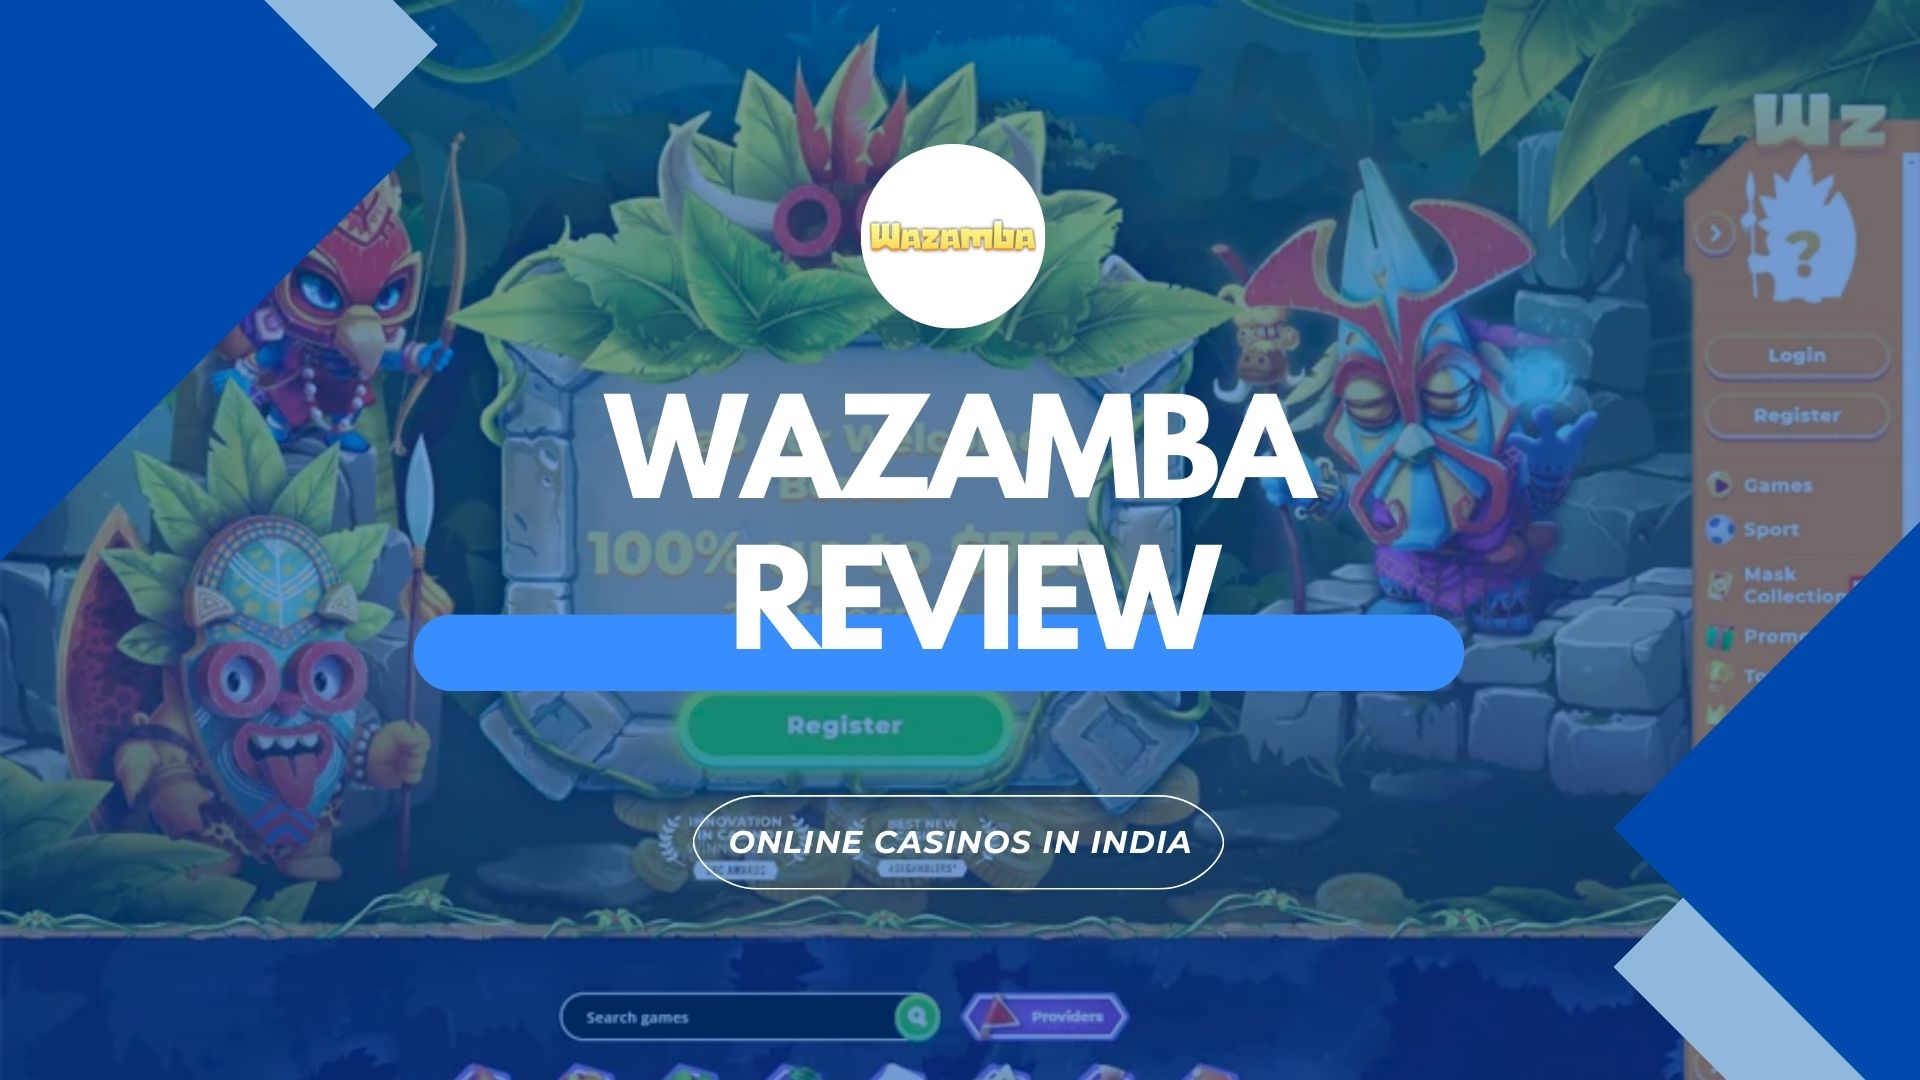 About Wazamba Casino